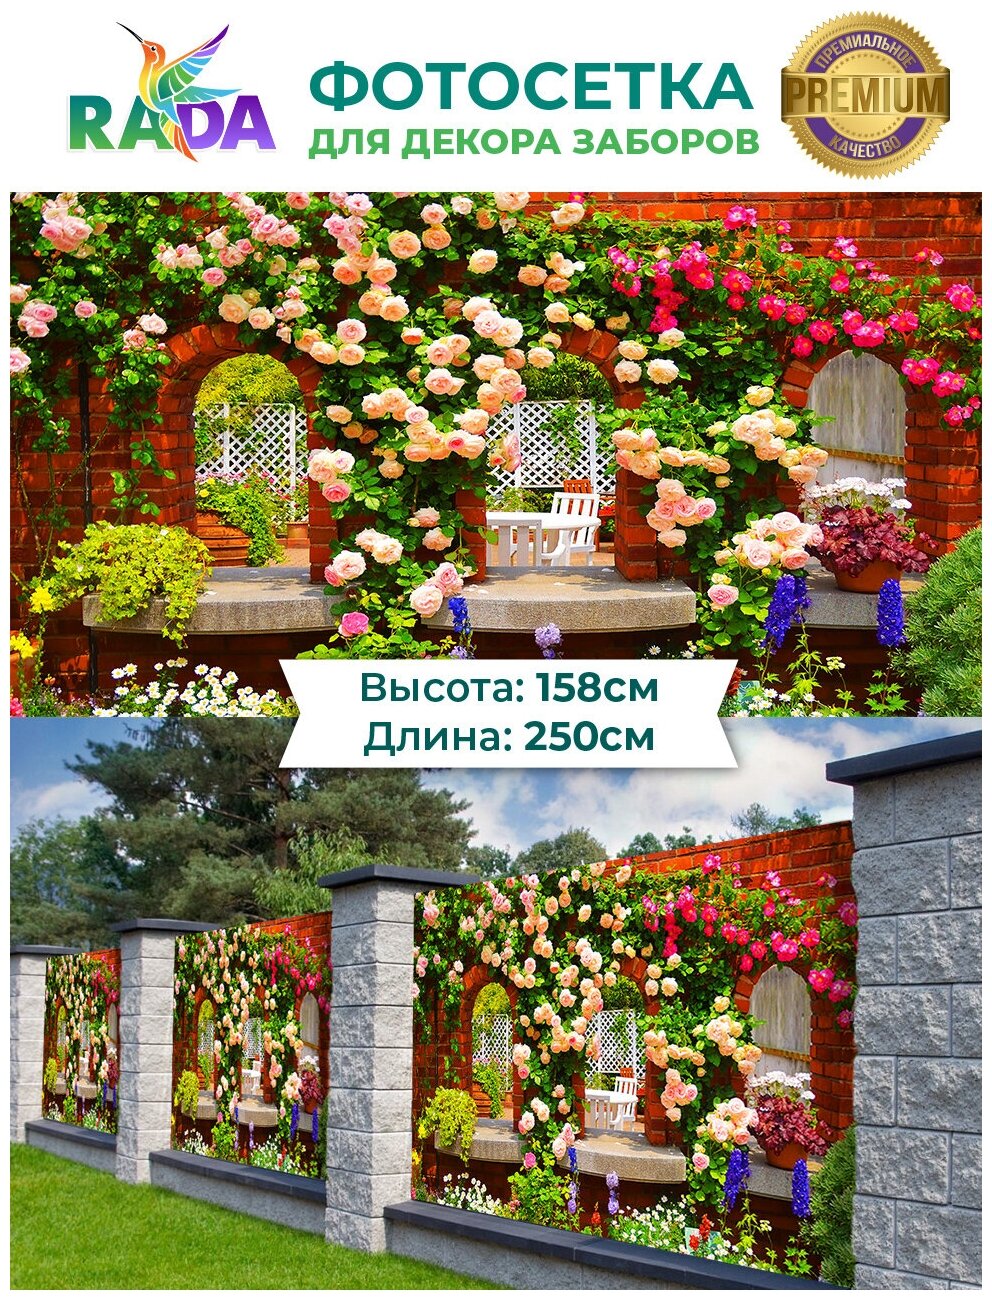 Фотосетка "Рада" для декора забора "Двор в цветах" 158х250 см.